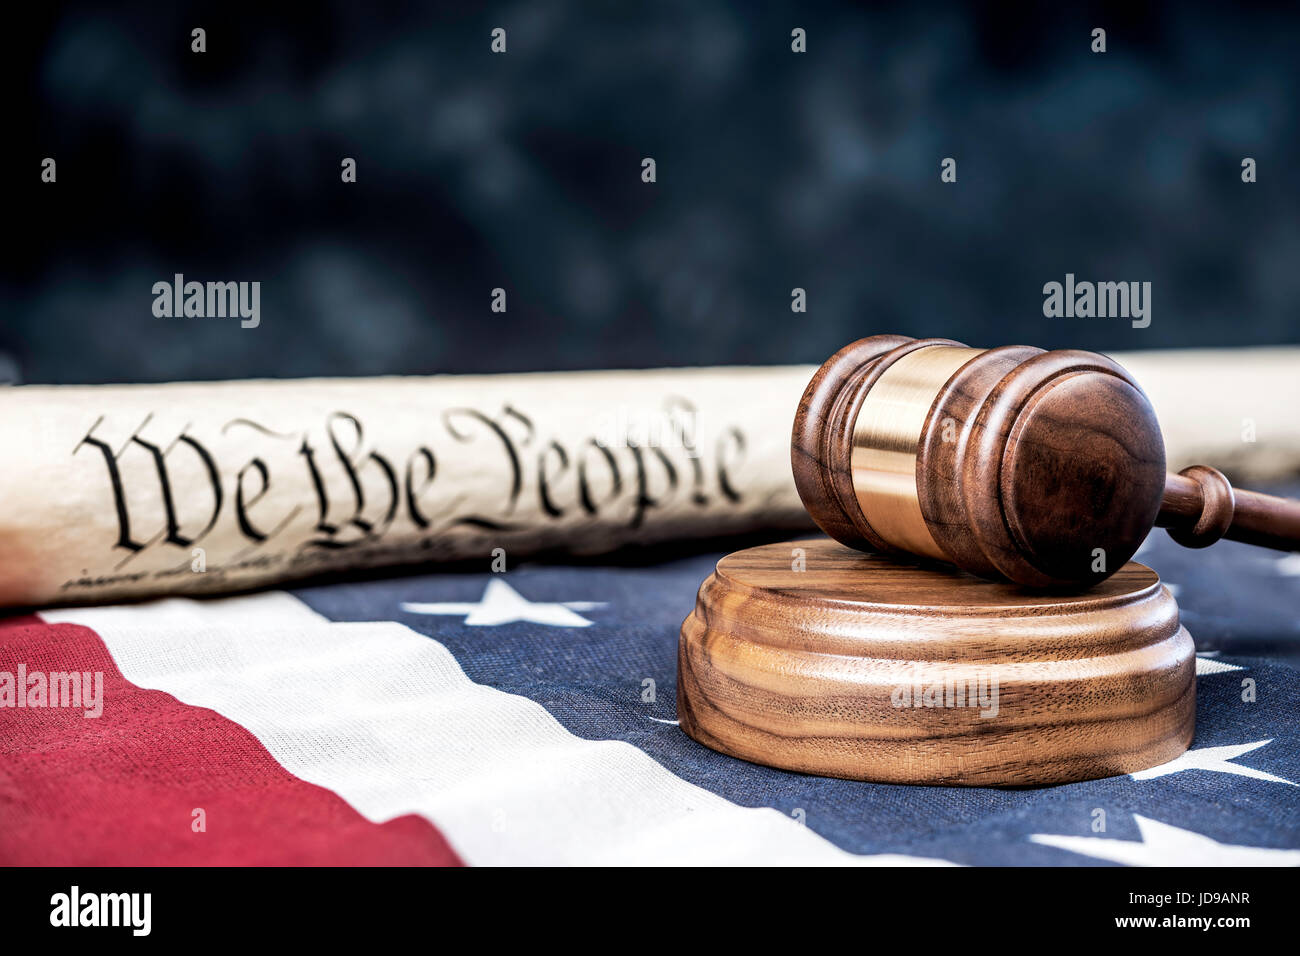 La costituzione degli Stati Uniti arrotolata su una bandiera americana con un martello in primo piano. Camera per copia lungo la metà superiore dell'immagine. Foto Stock